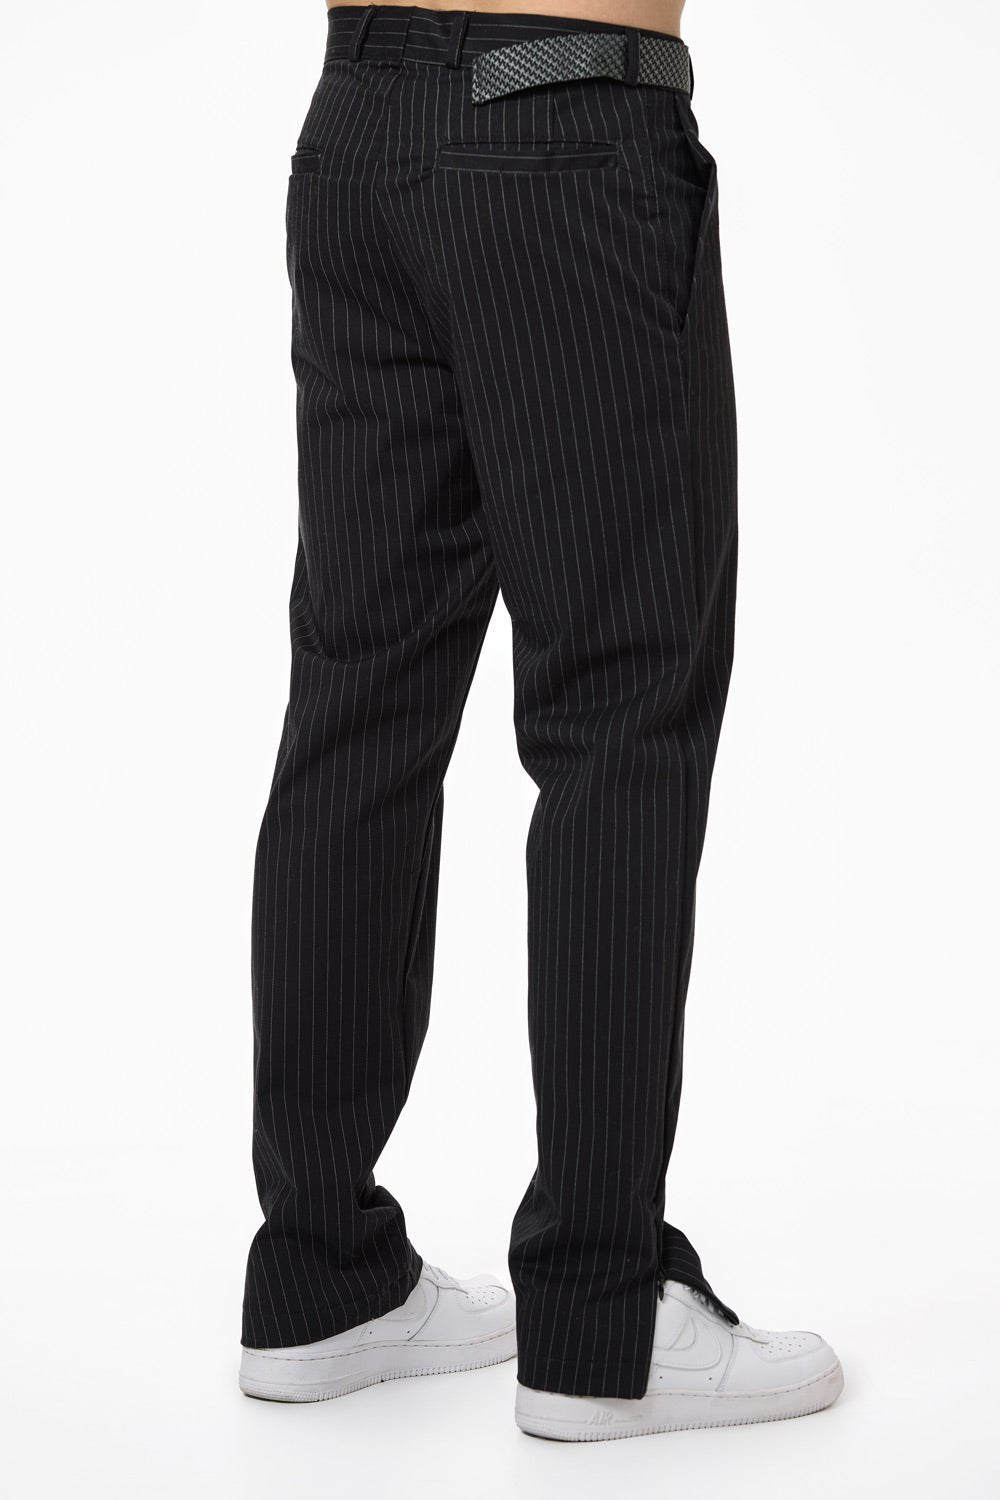 Pantaloni negri pentru bărbați cu decupaj "Monaco" de la Atelier Hamza, compuși din 97% bumbac și 3% elastan, textură moale